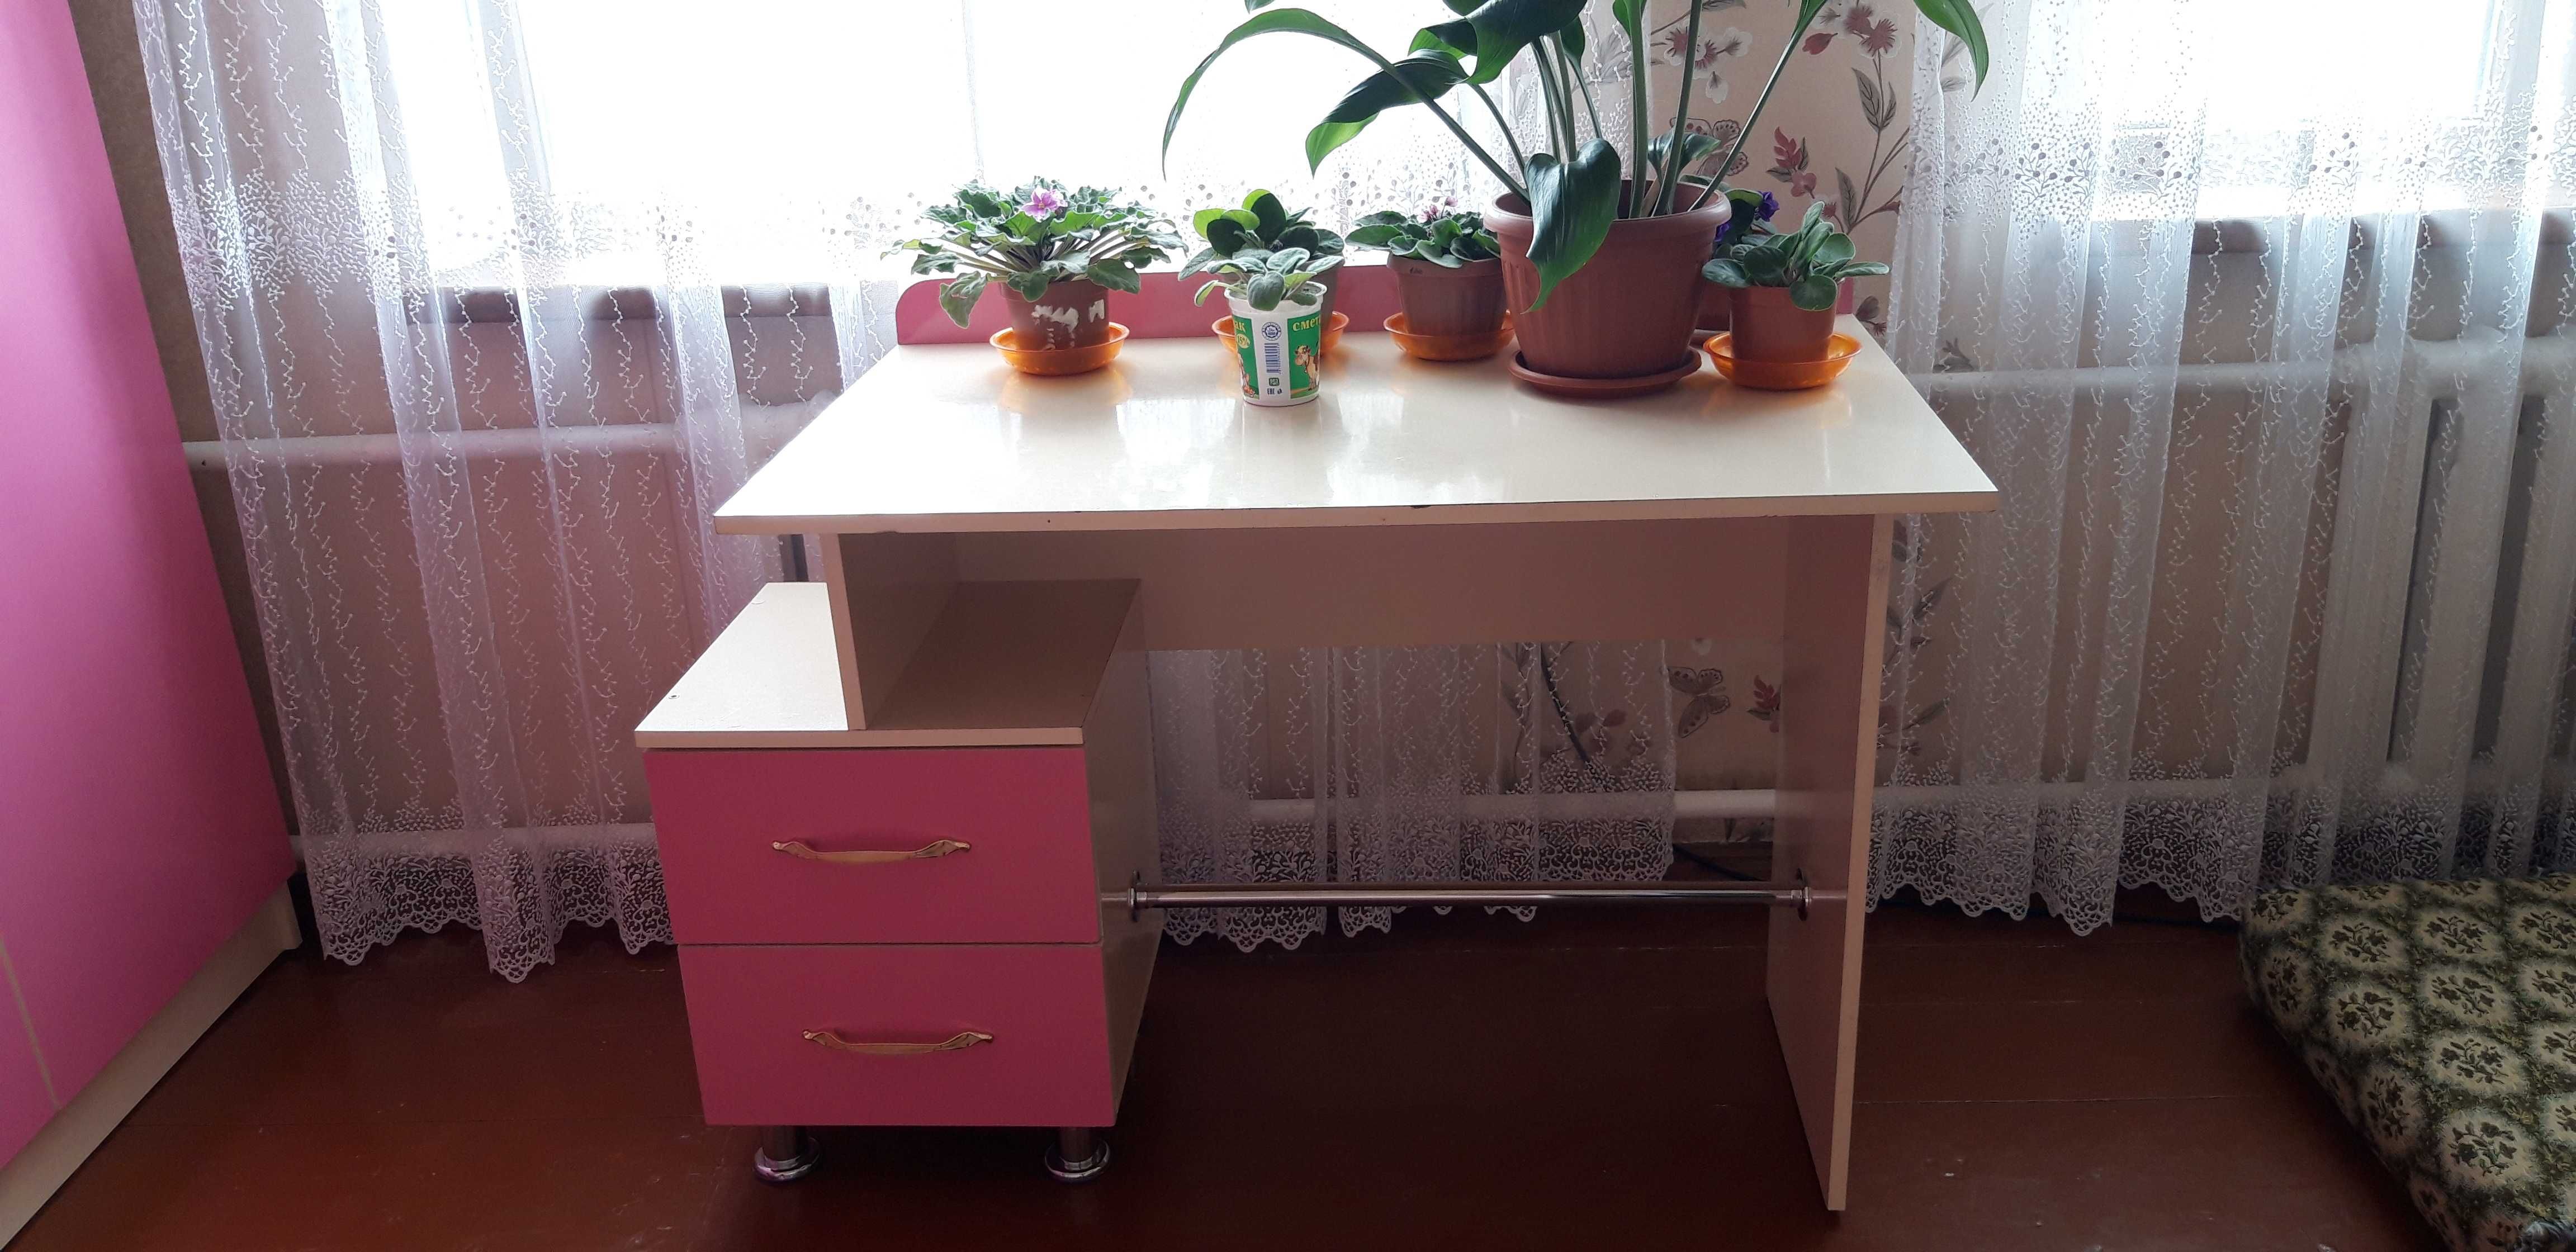 Мебель для детской комнаты для девочки